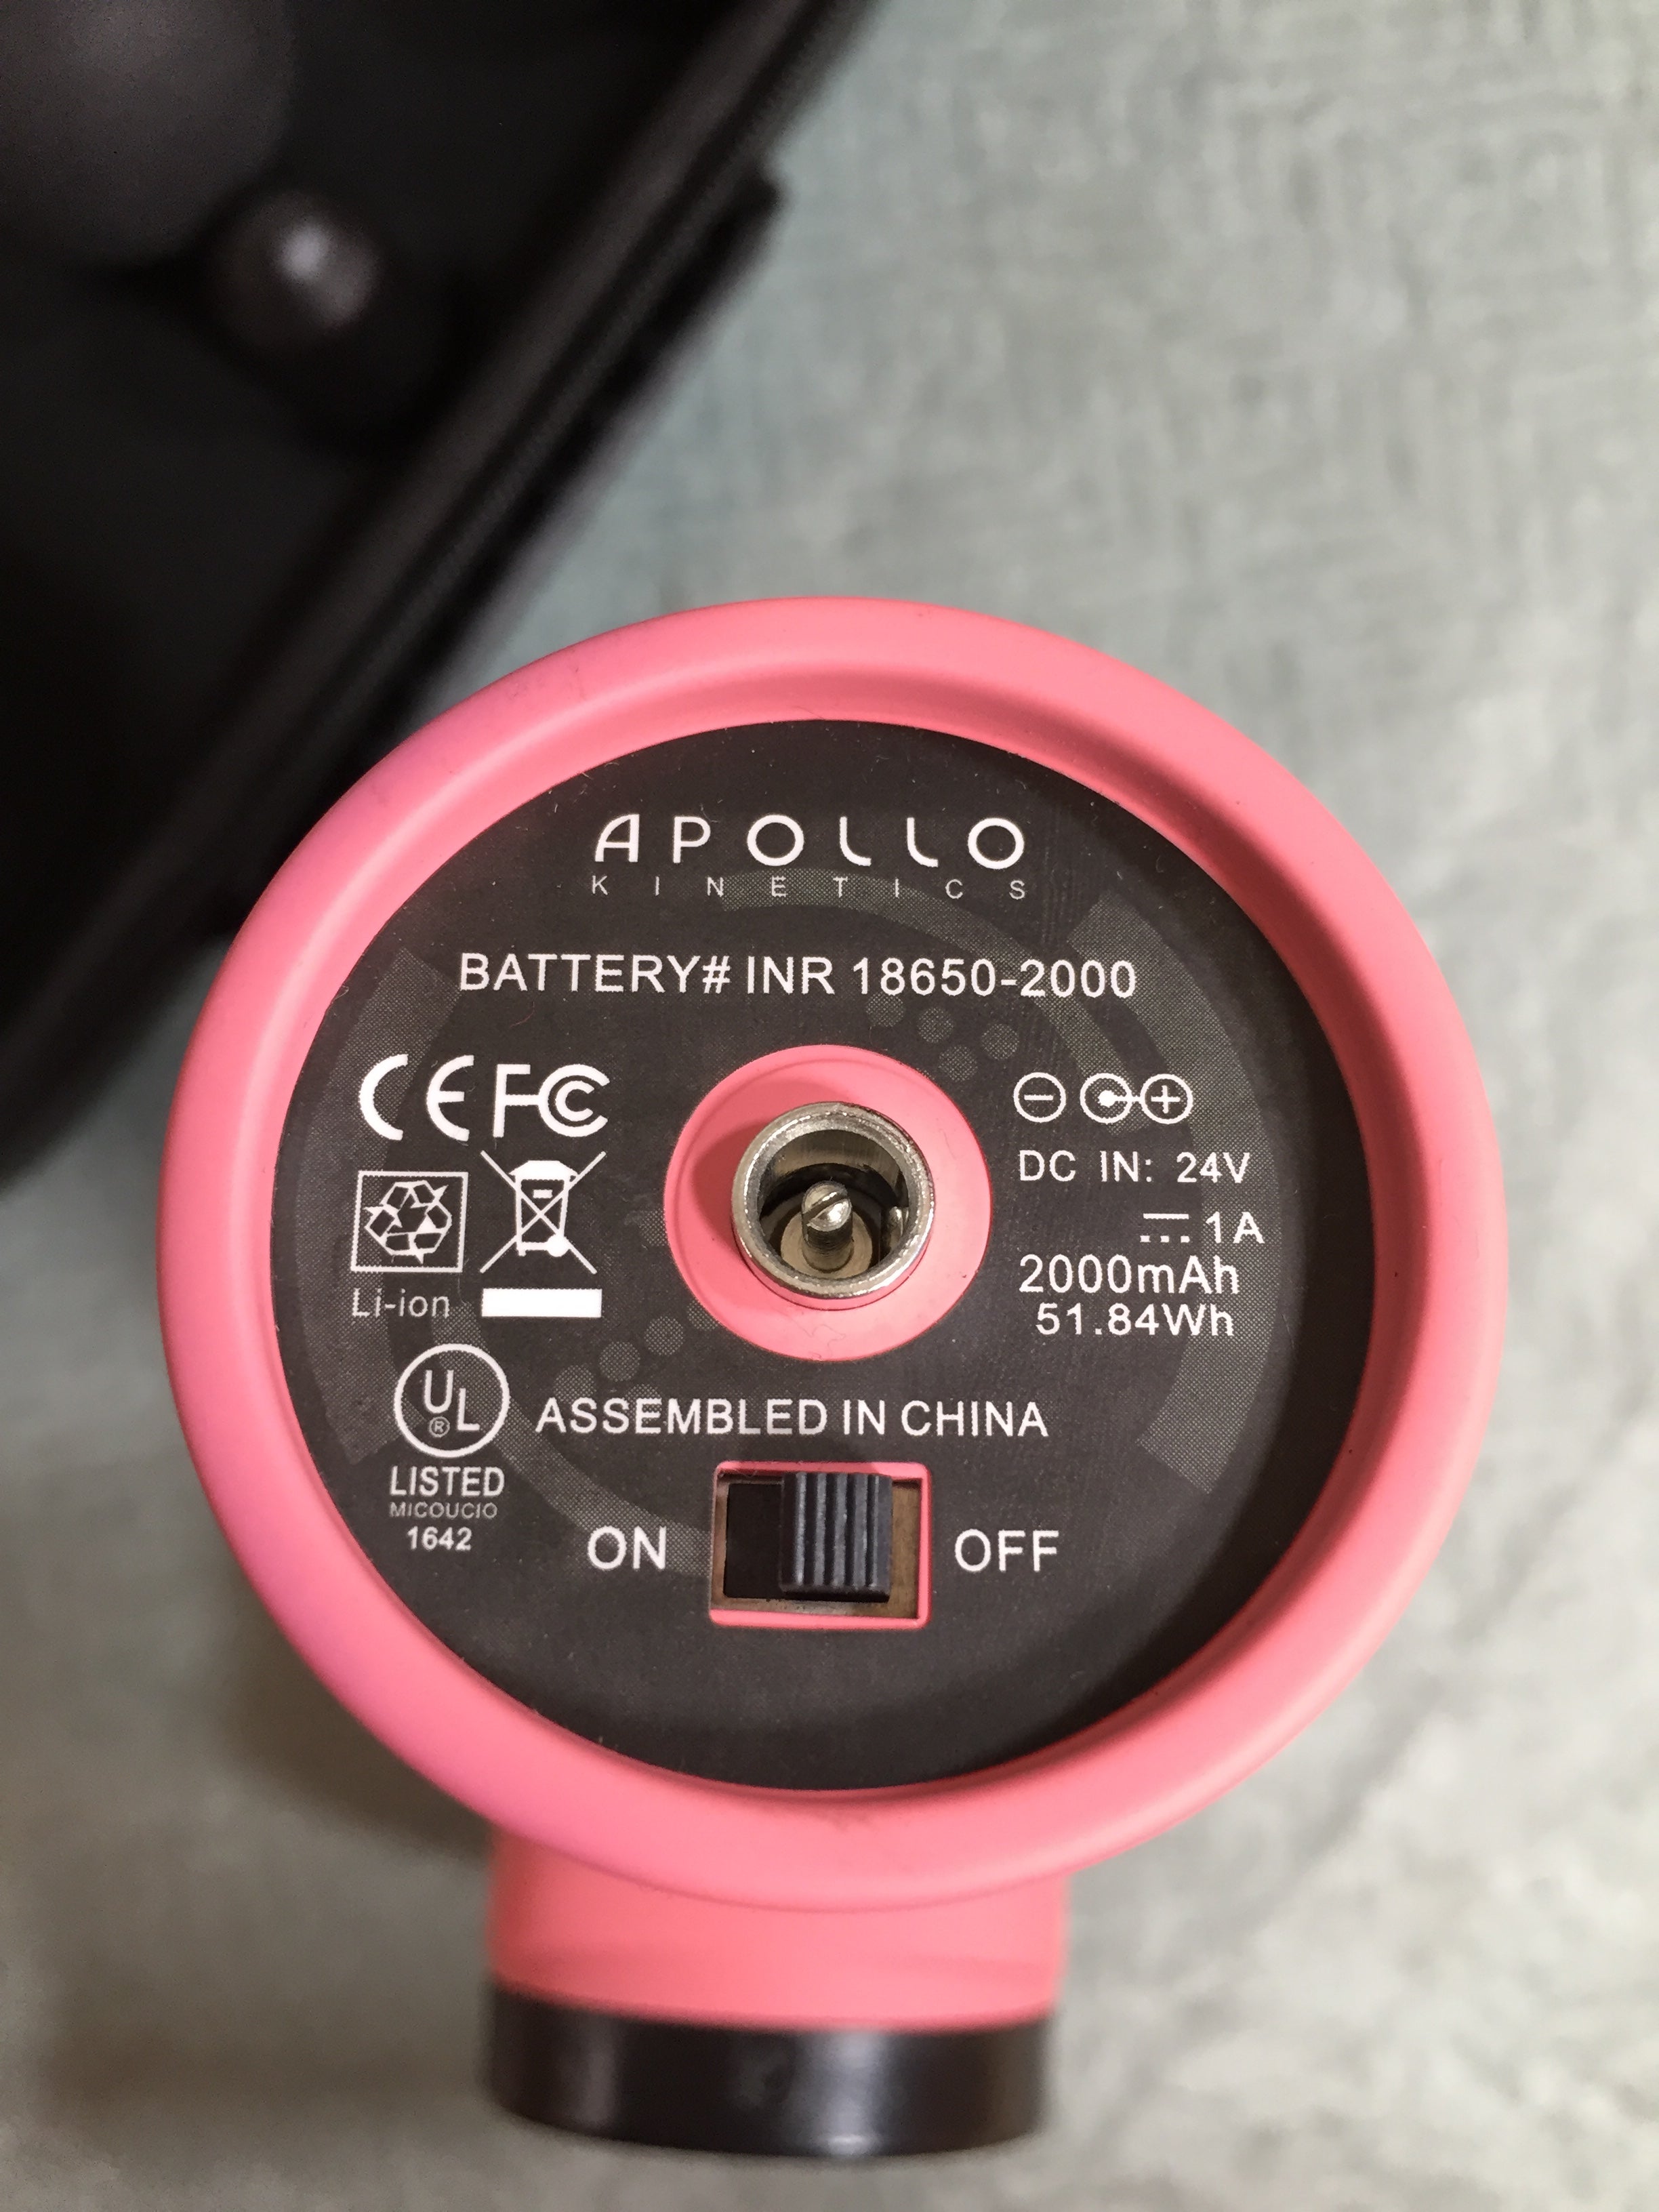 Apollo Kinetics Pulse Portable Massage Gun - Soft Coral (7591848935662)